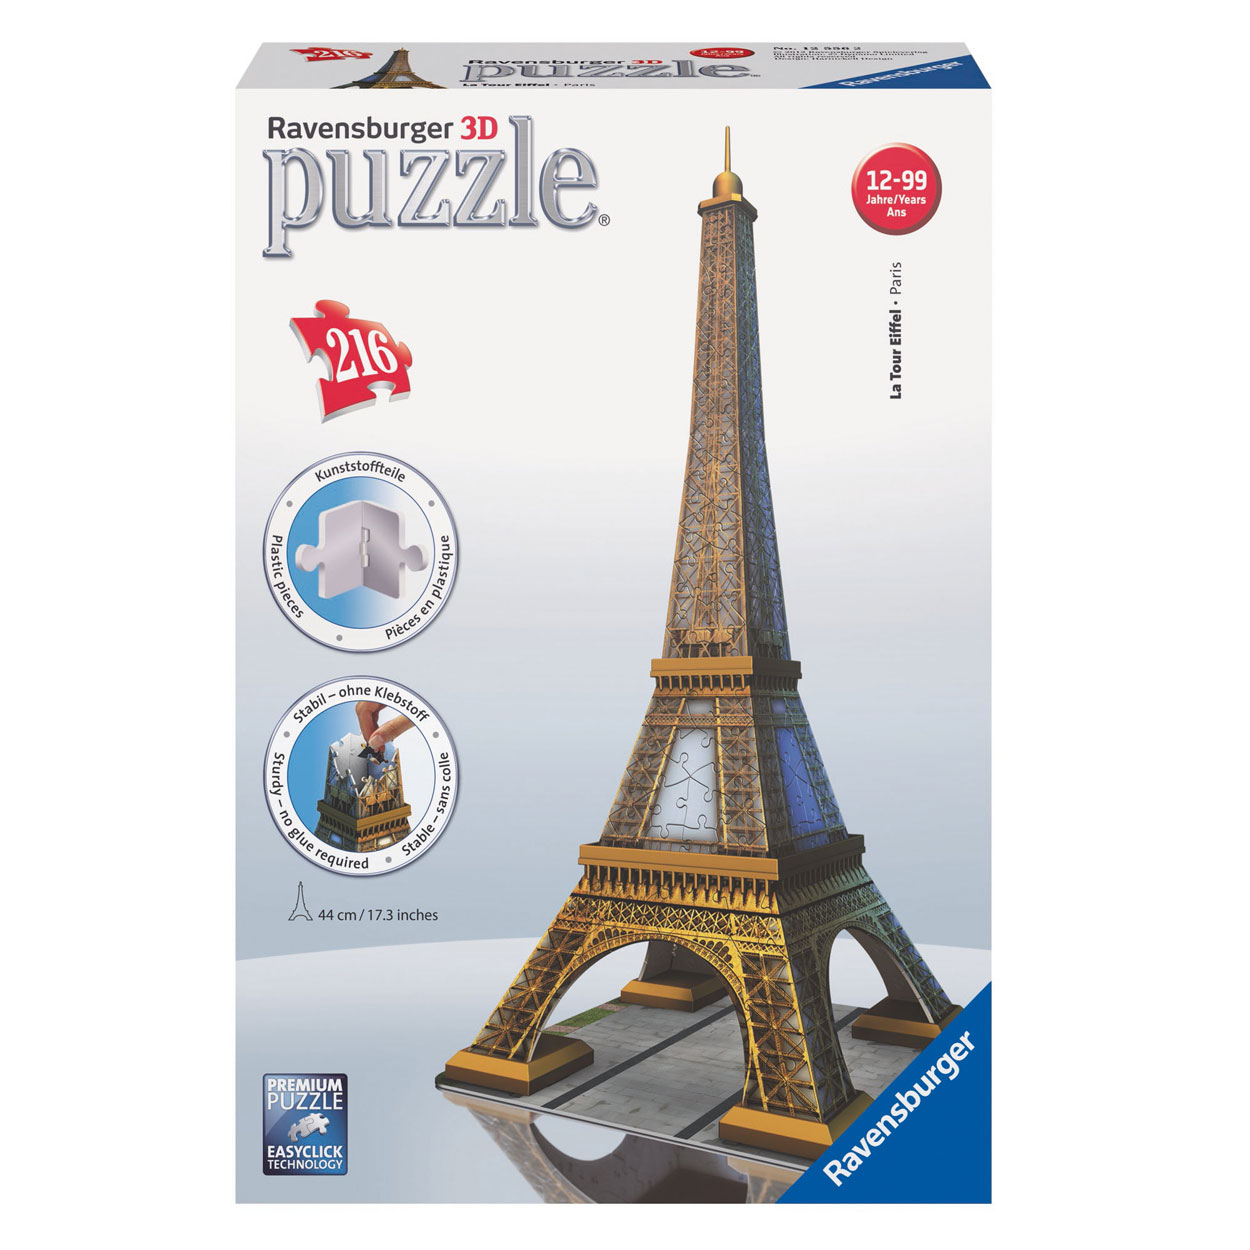 Ravensburger 3D puzzle Eiffel Tower | Thimble